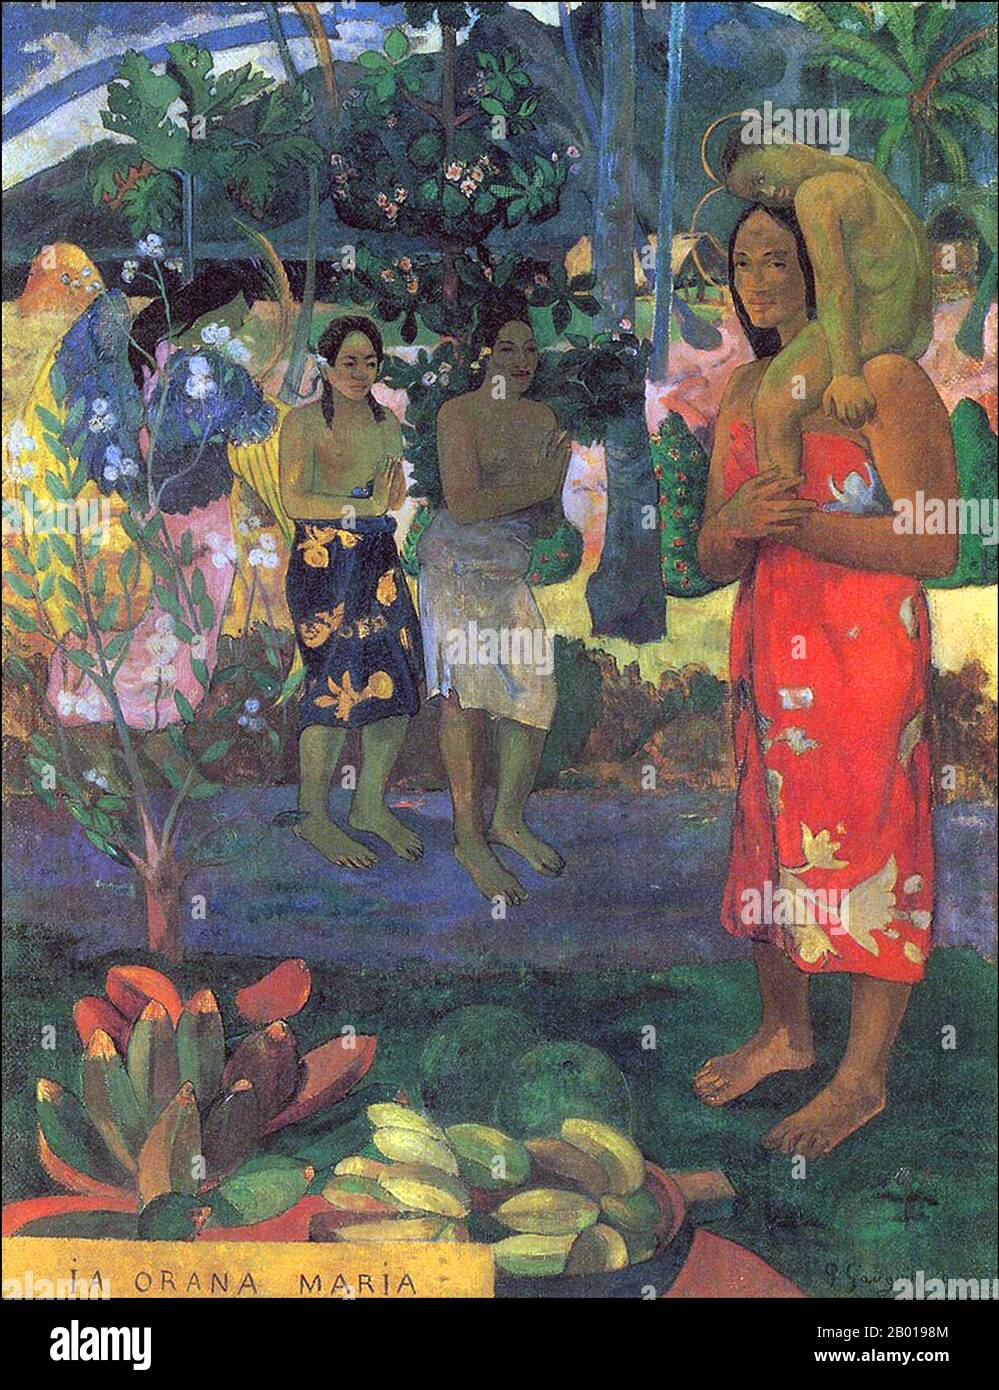 Tahiti: 'IA Orana Maria' (Hail Mary). Peinture à l'huile sur toile par Paul Gauguin (7 juin 1848 - 8 mai 1903), 1891. Paul Gauguin est né à Paris en 1848 et a passé une partie de son enfance au Pérou. Il a travaillé comme courtier en Bourse avec peu de succès et a souffert de crises de dépression grave. Il a également peint. En 1891, Gauguin, frustré par le manque de reconnaissance à la maison et financièrement indigente, navigue vers les tropiques pour échapper à la civilisation européenne et "tout ce qui est artificiel et conventionnel". Son temps là-bas, en particulier à Tahiti et dans les îles Marquises, a suscité beaucoup d'intérêt. Banque D'Images